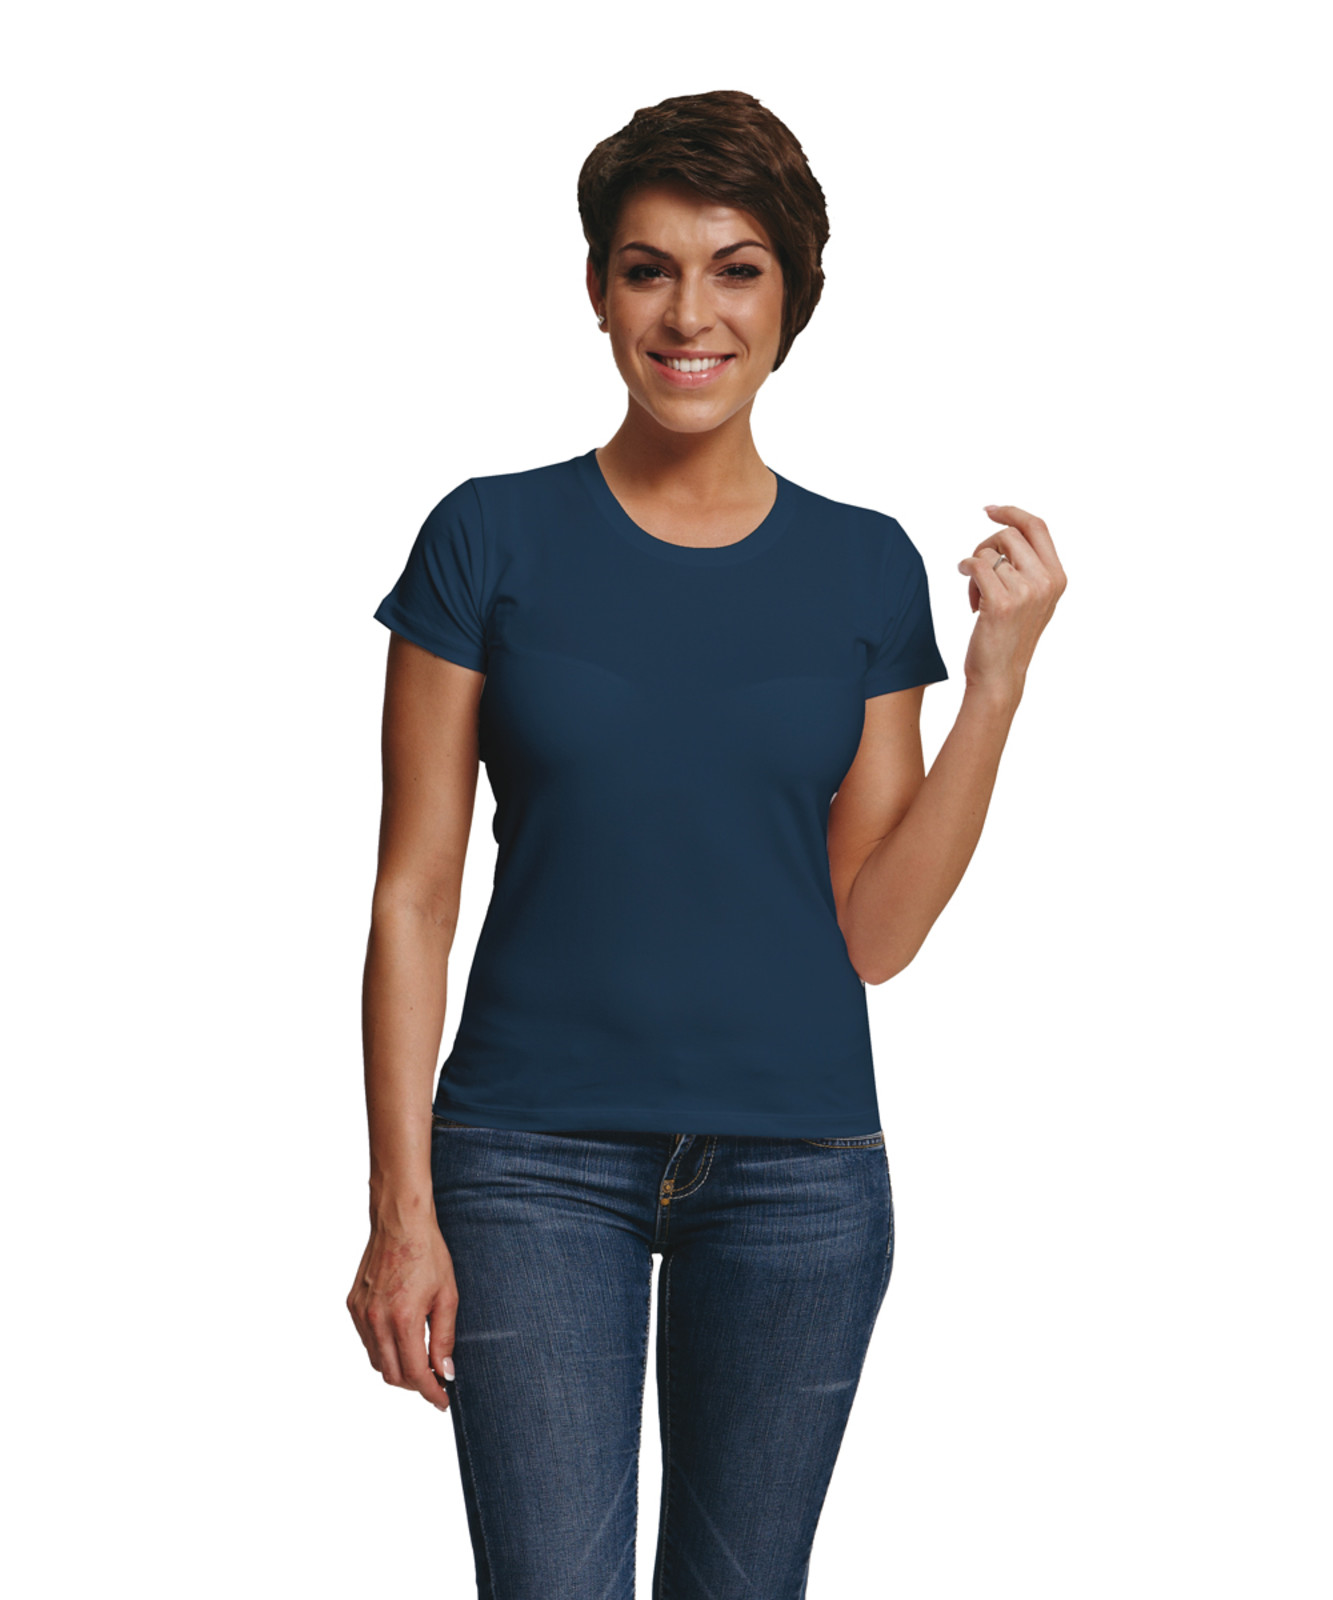 Dámske tričko s krátkym rukávom Surma Lady - veľkosť: M, farba: navy